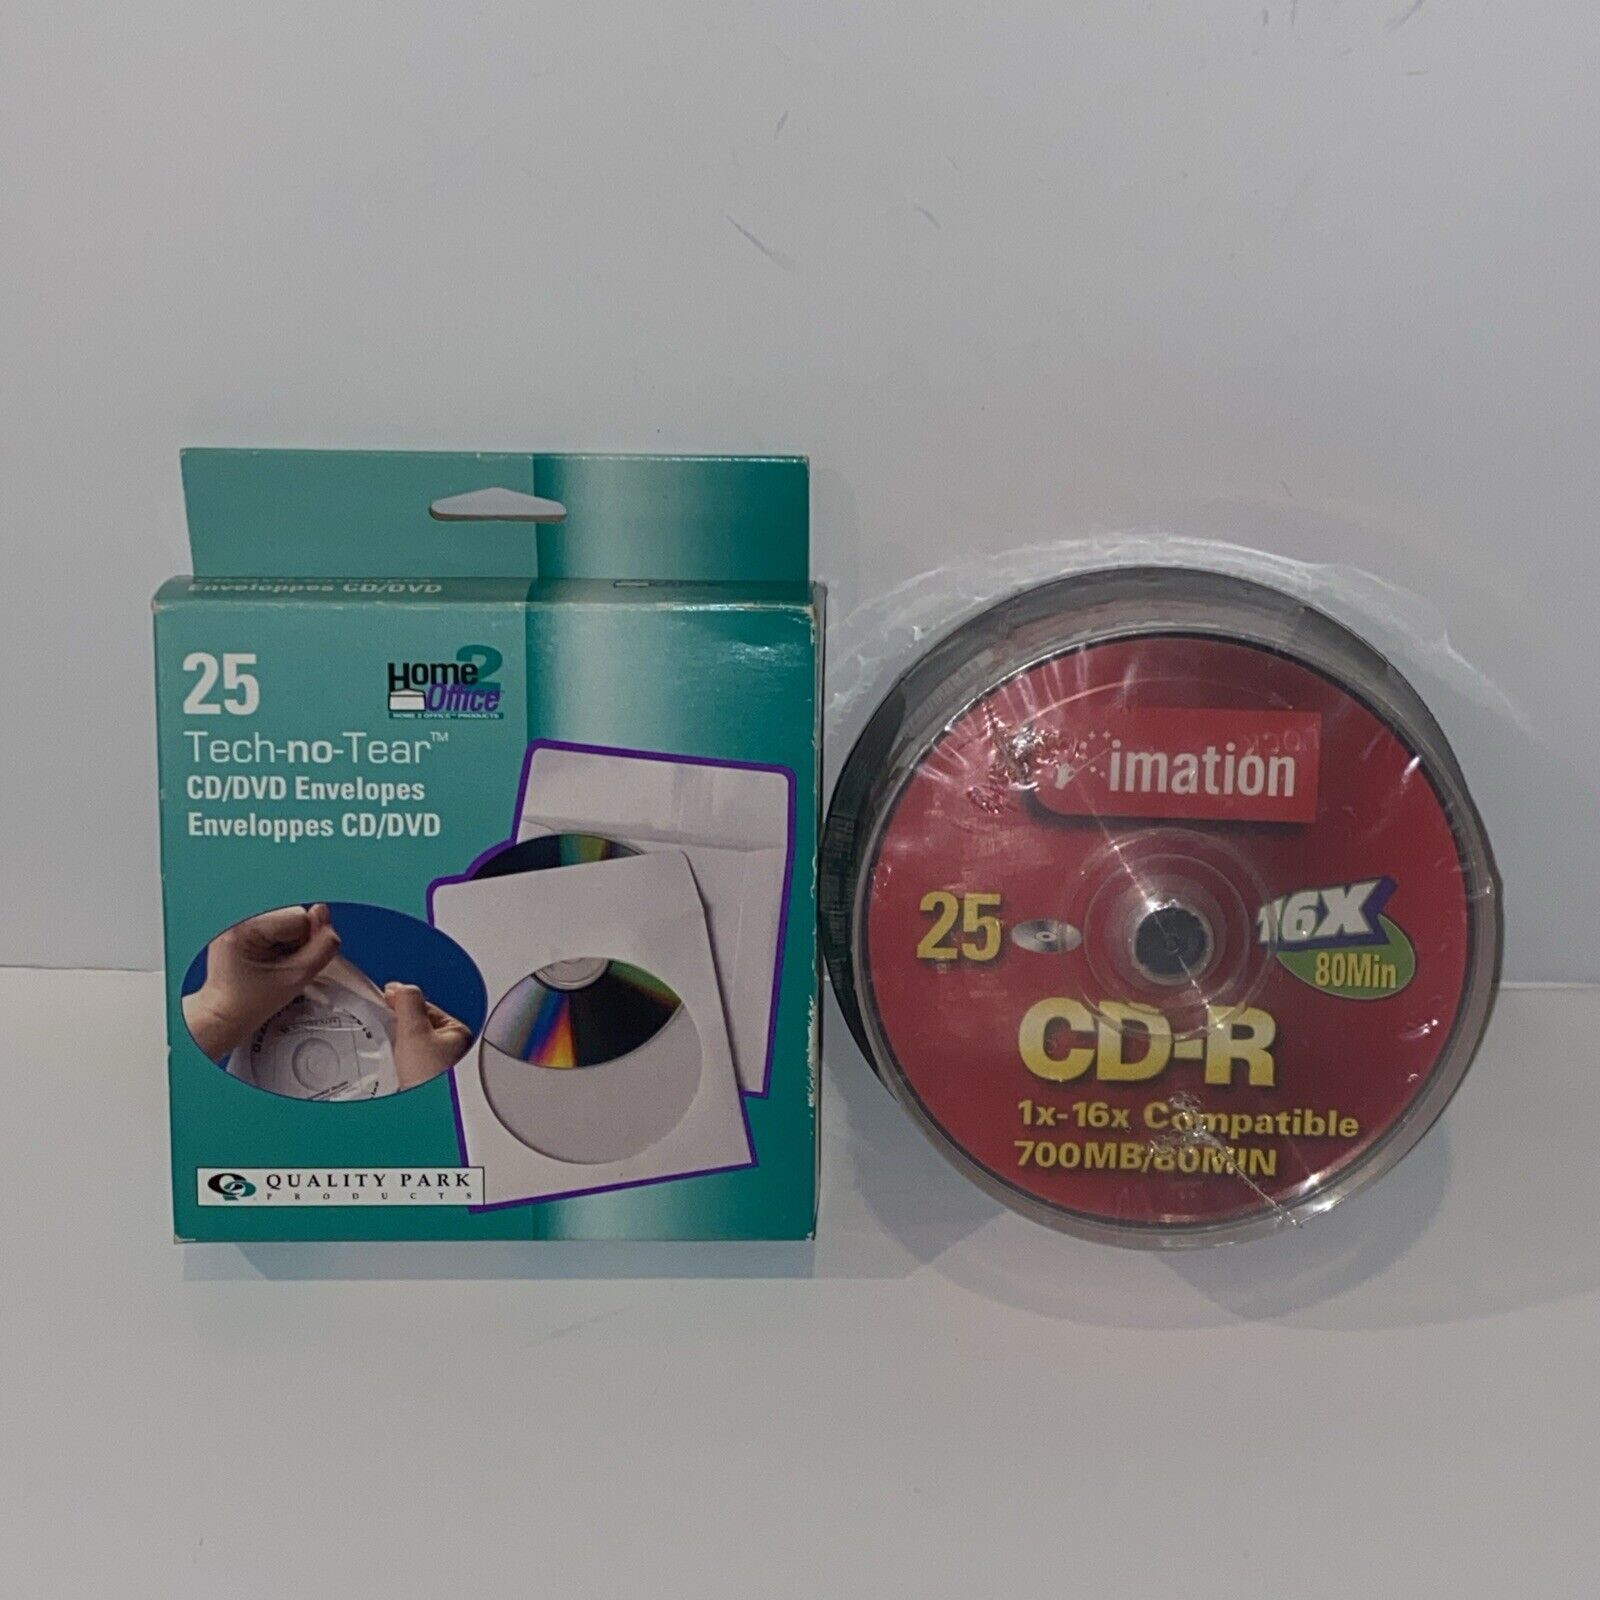 IMATION CD-R 25 Pack Plus CD/DVD ENVELOPES 